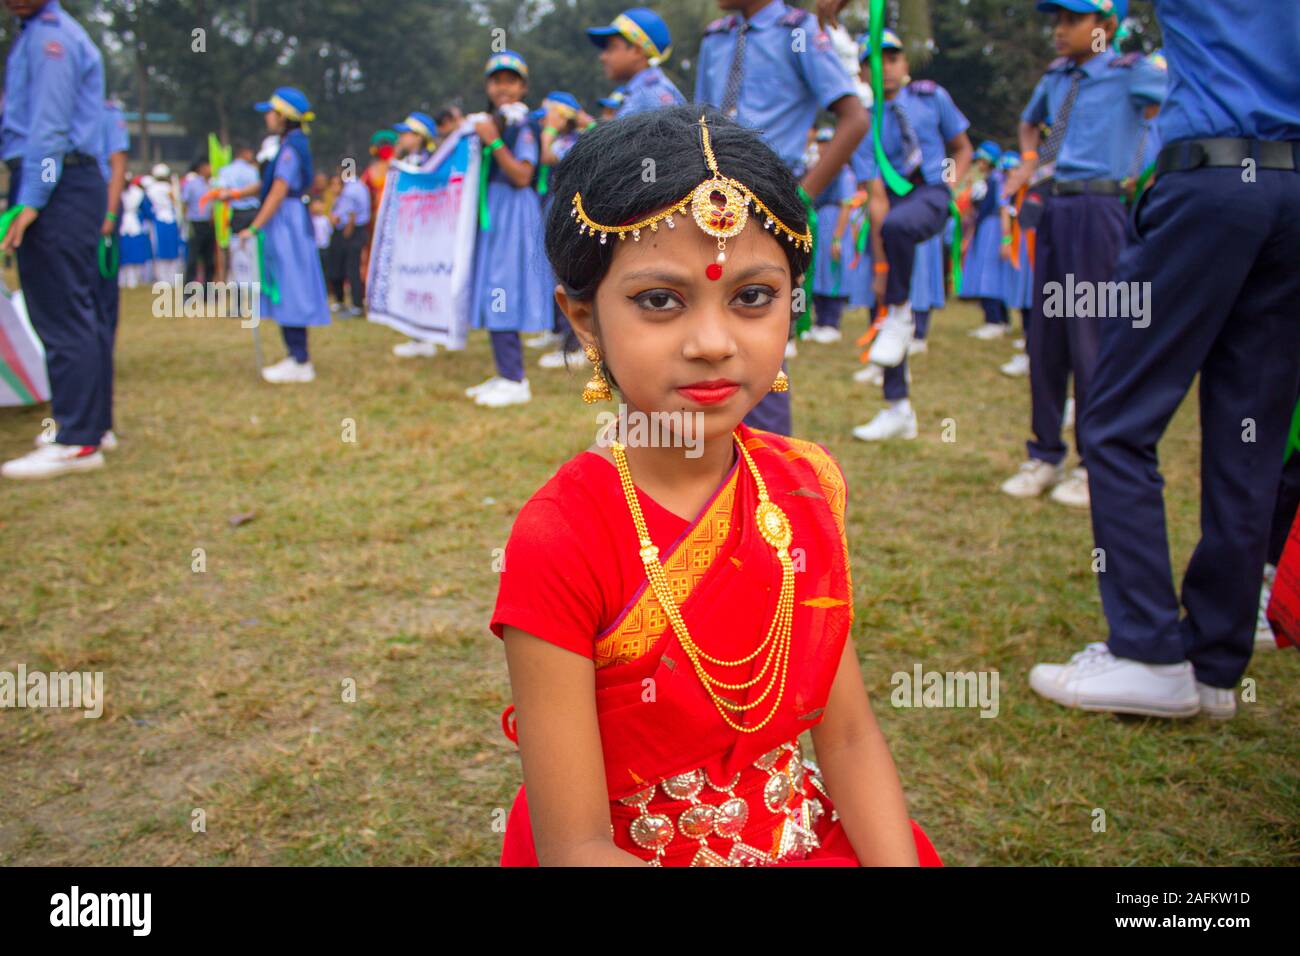 Tradicionalmente se celebra el día de la victoria de Bangladesh: Asia del sur linda chica participando Fancy Dress la competencia por el uso de joyas y vestuario Foto de stock